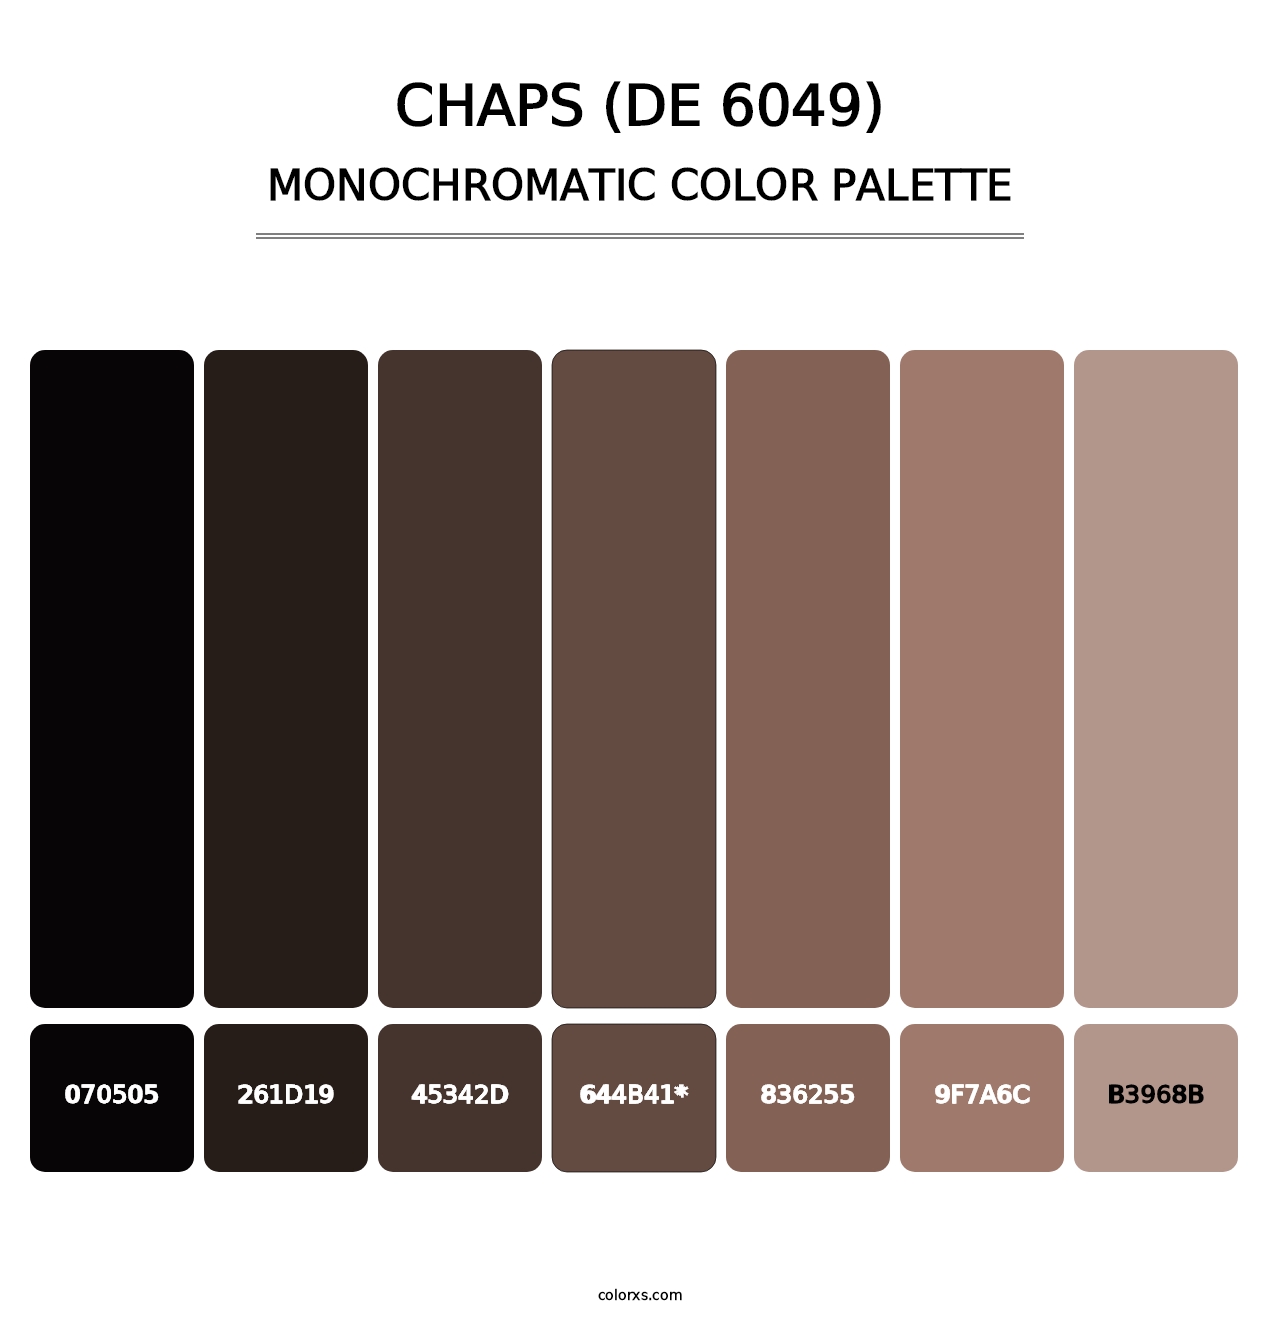 Chaps (DE 6049) - Monochromatic Color Palette